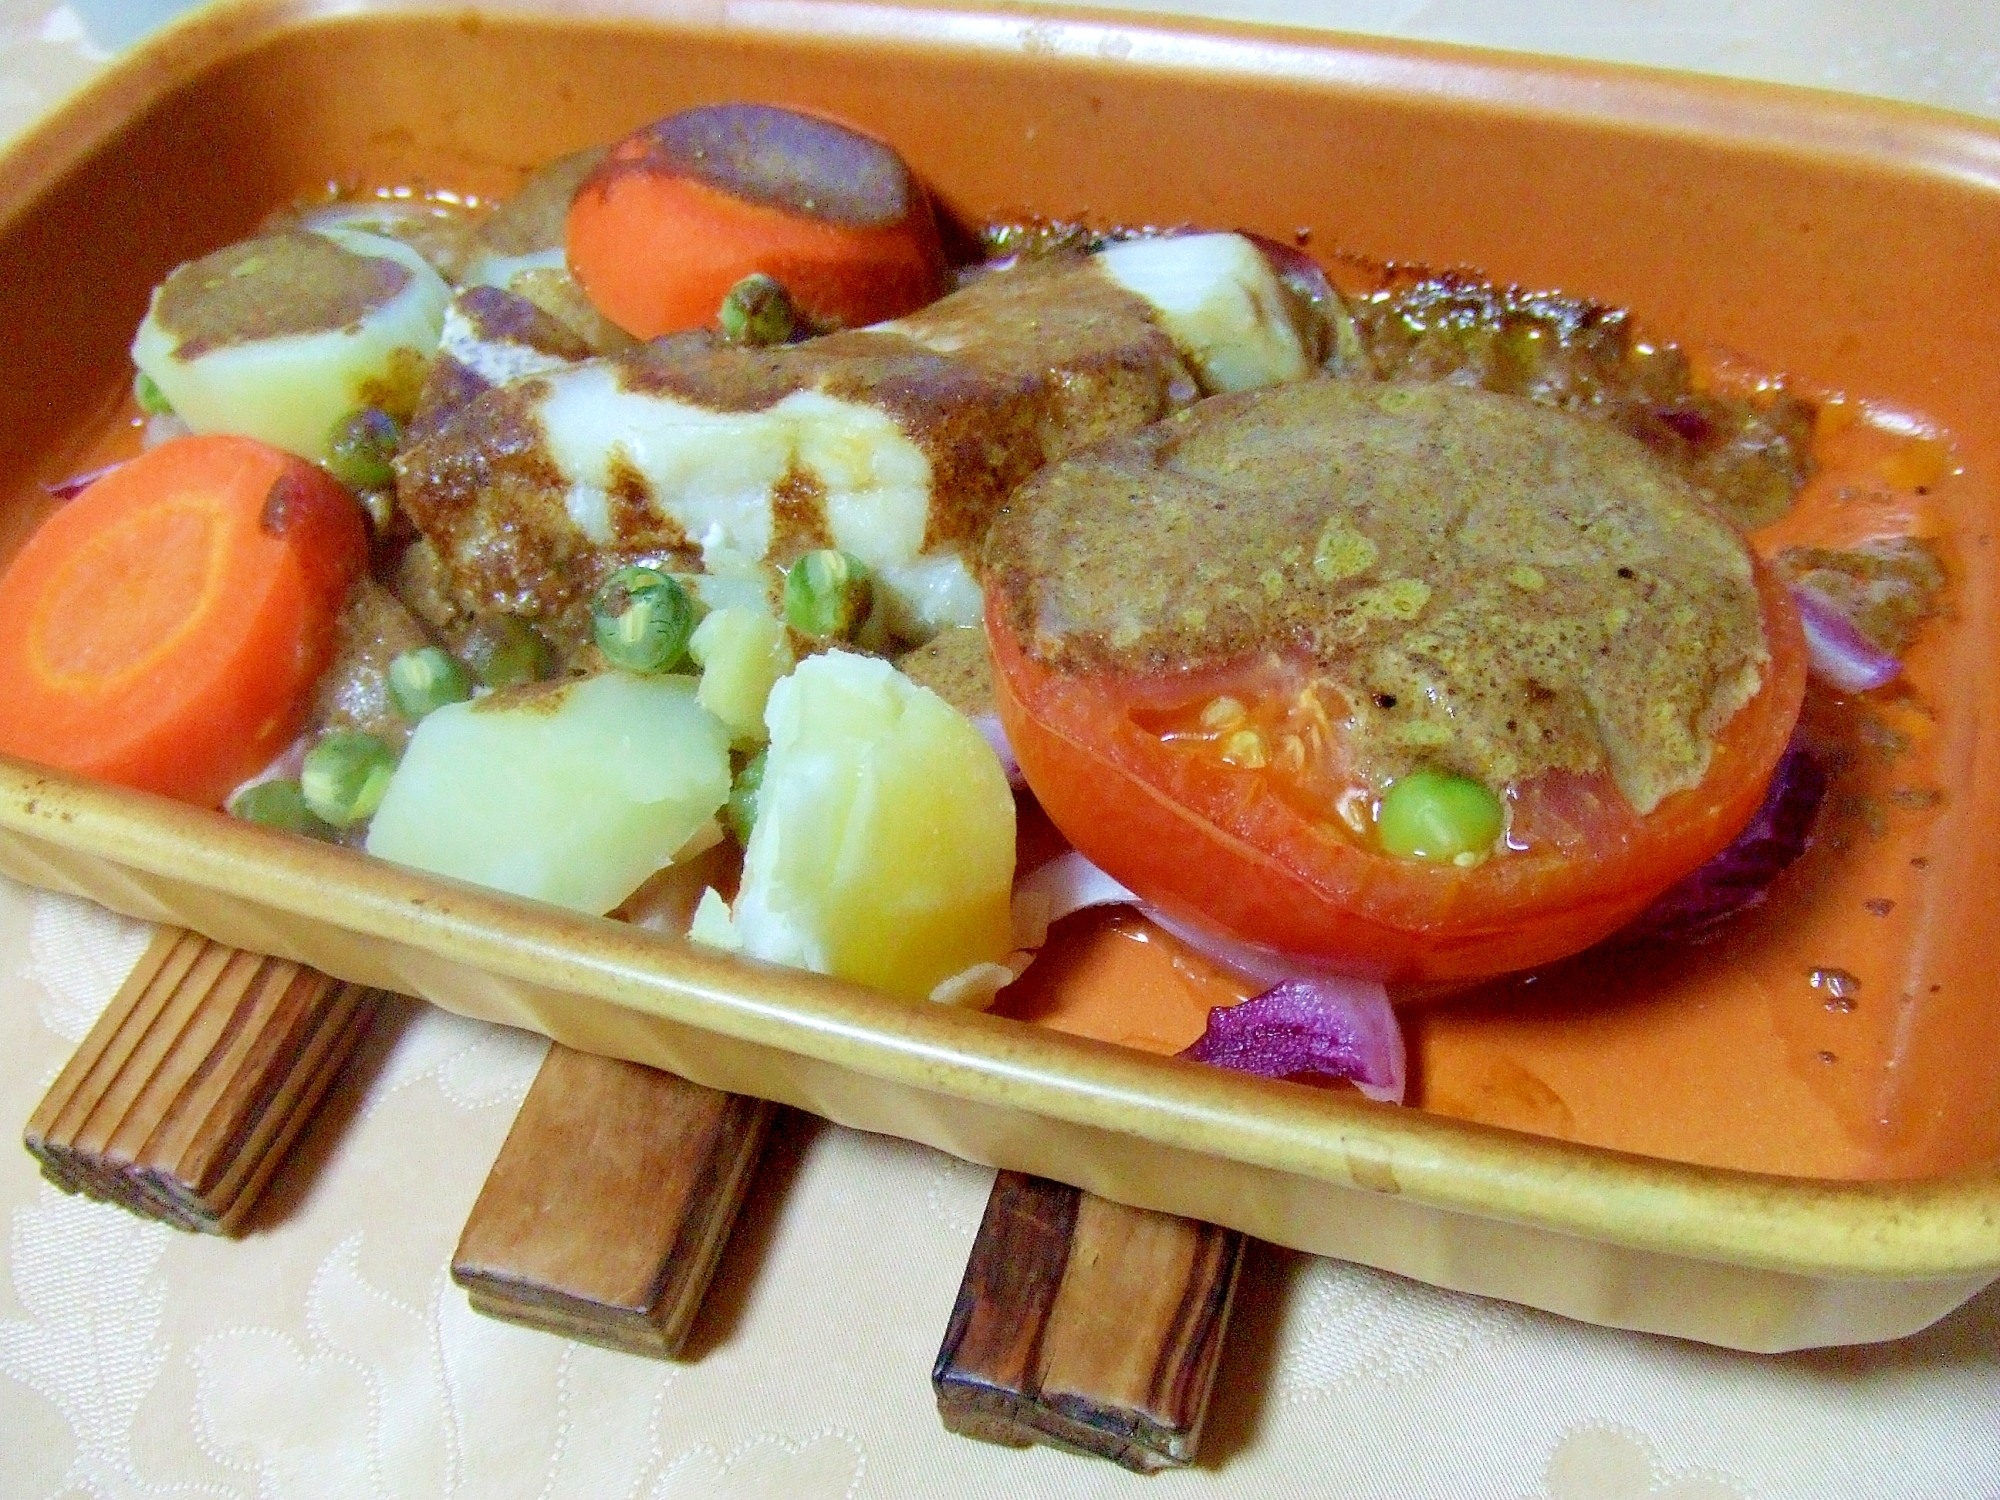 魚と野菜のオーブン焼きカレーソース